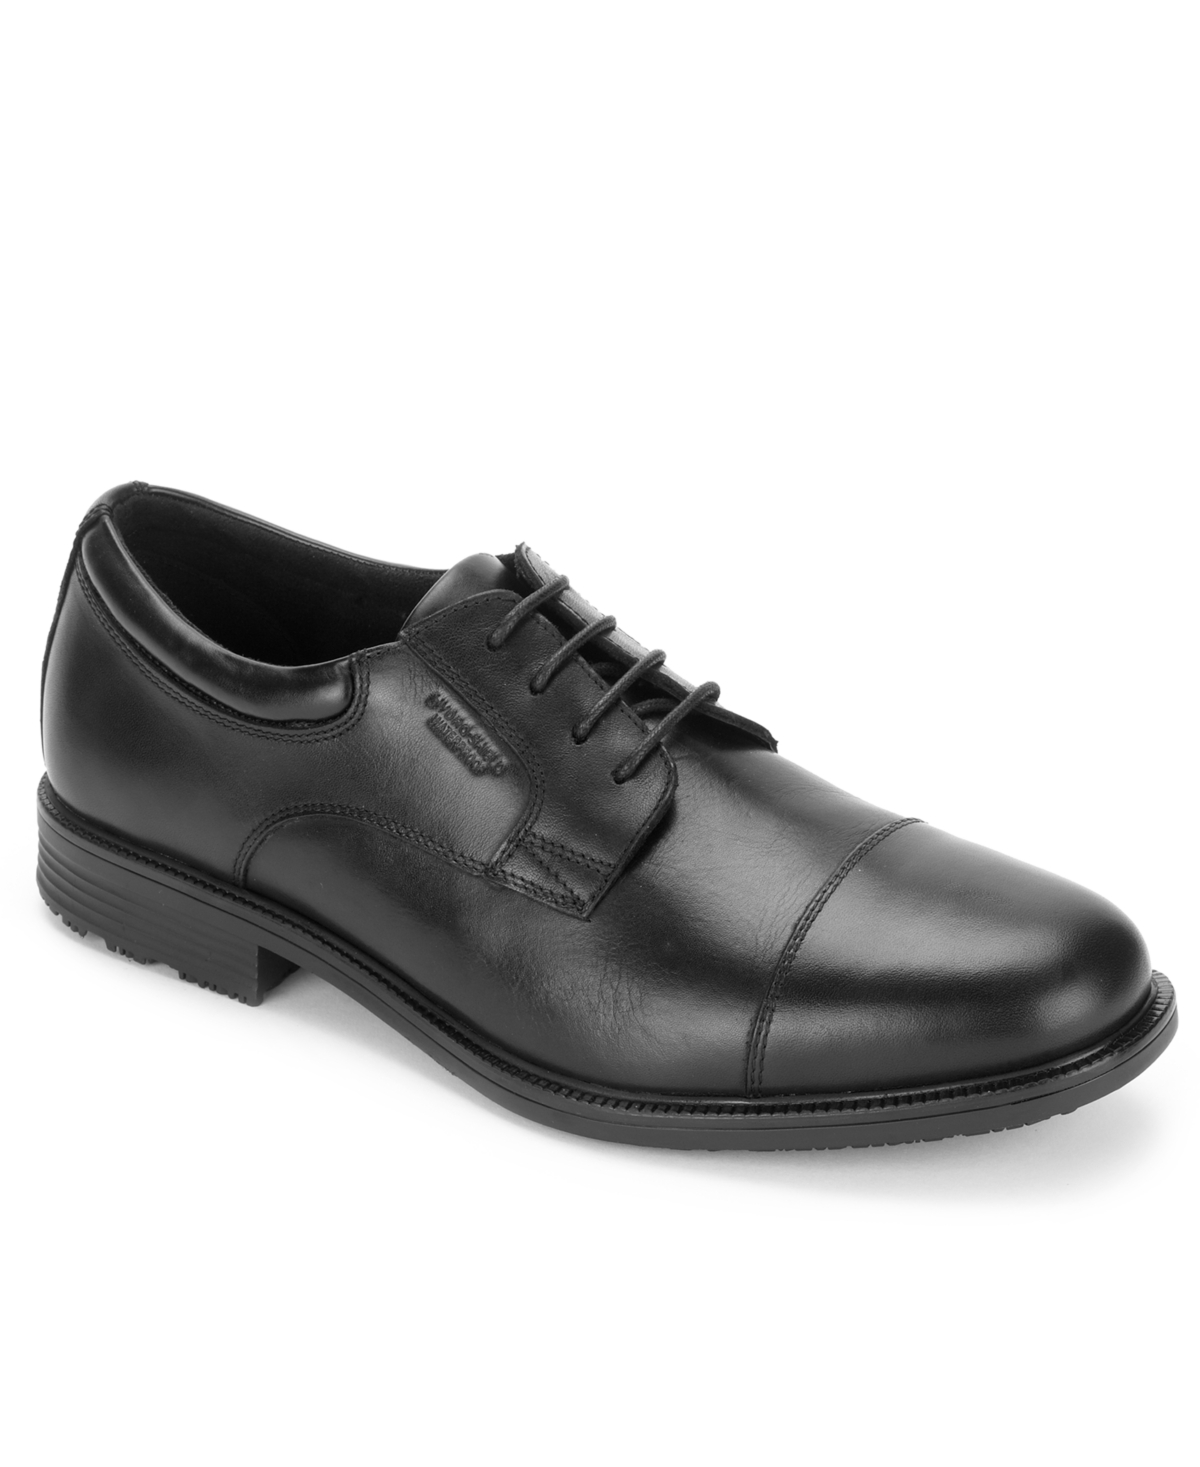 Men's Essential Details Water-Resistance Captoe Shoes - Black